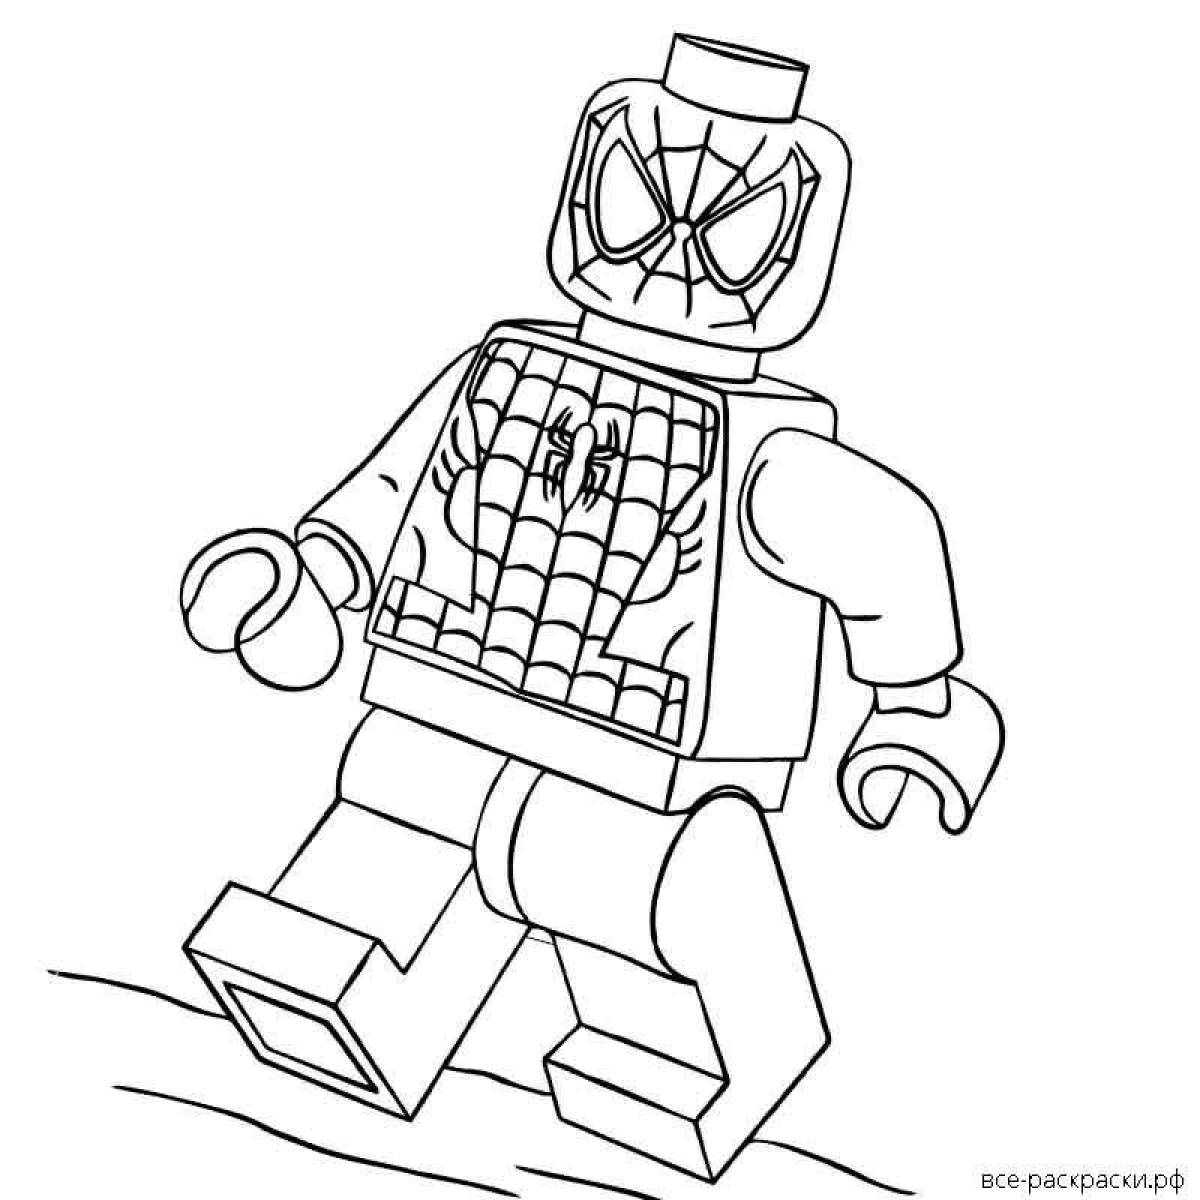 Lego spider man fun coloring book